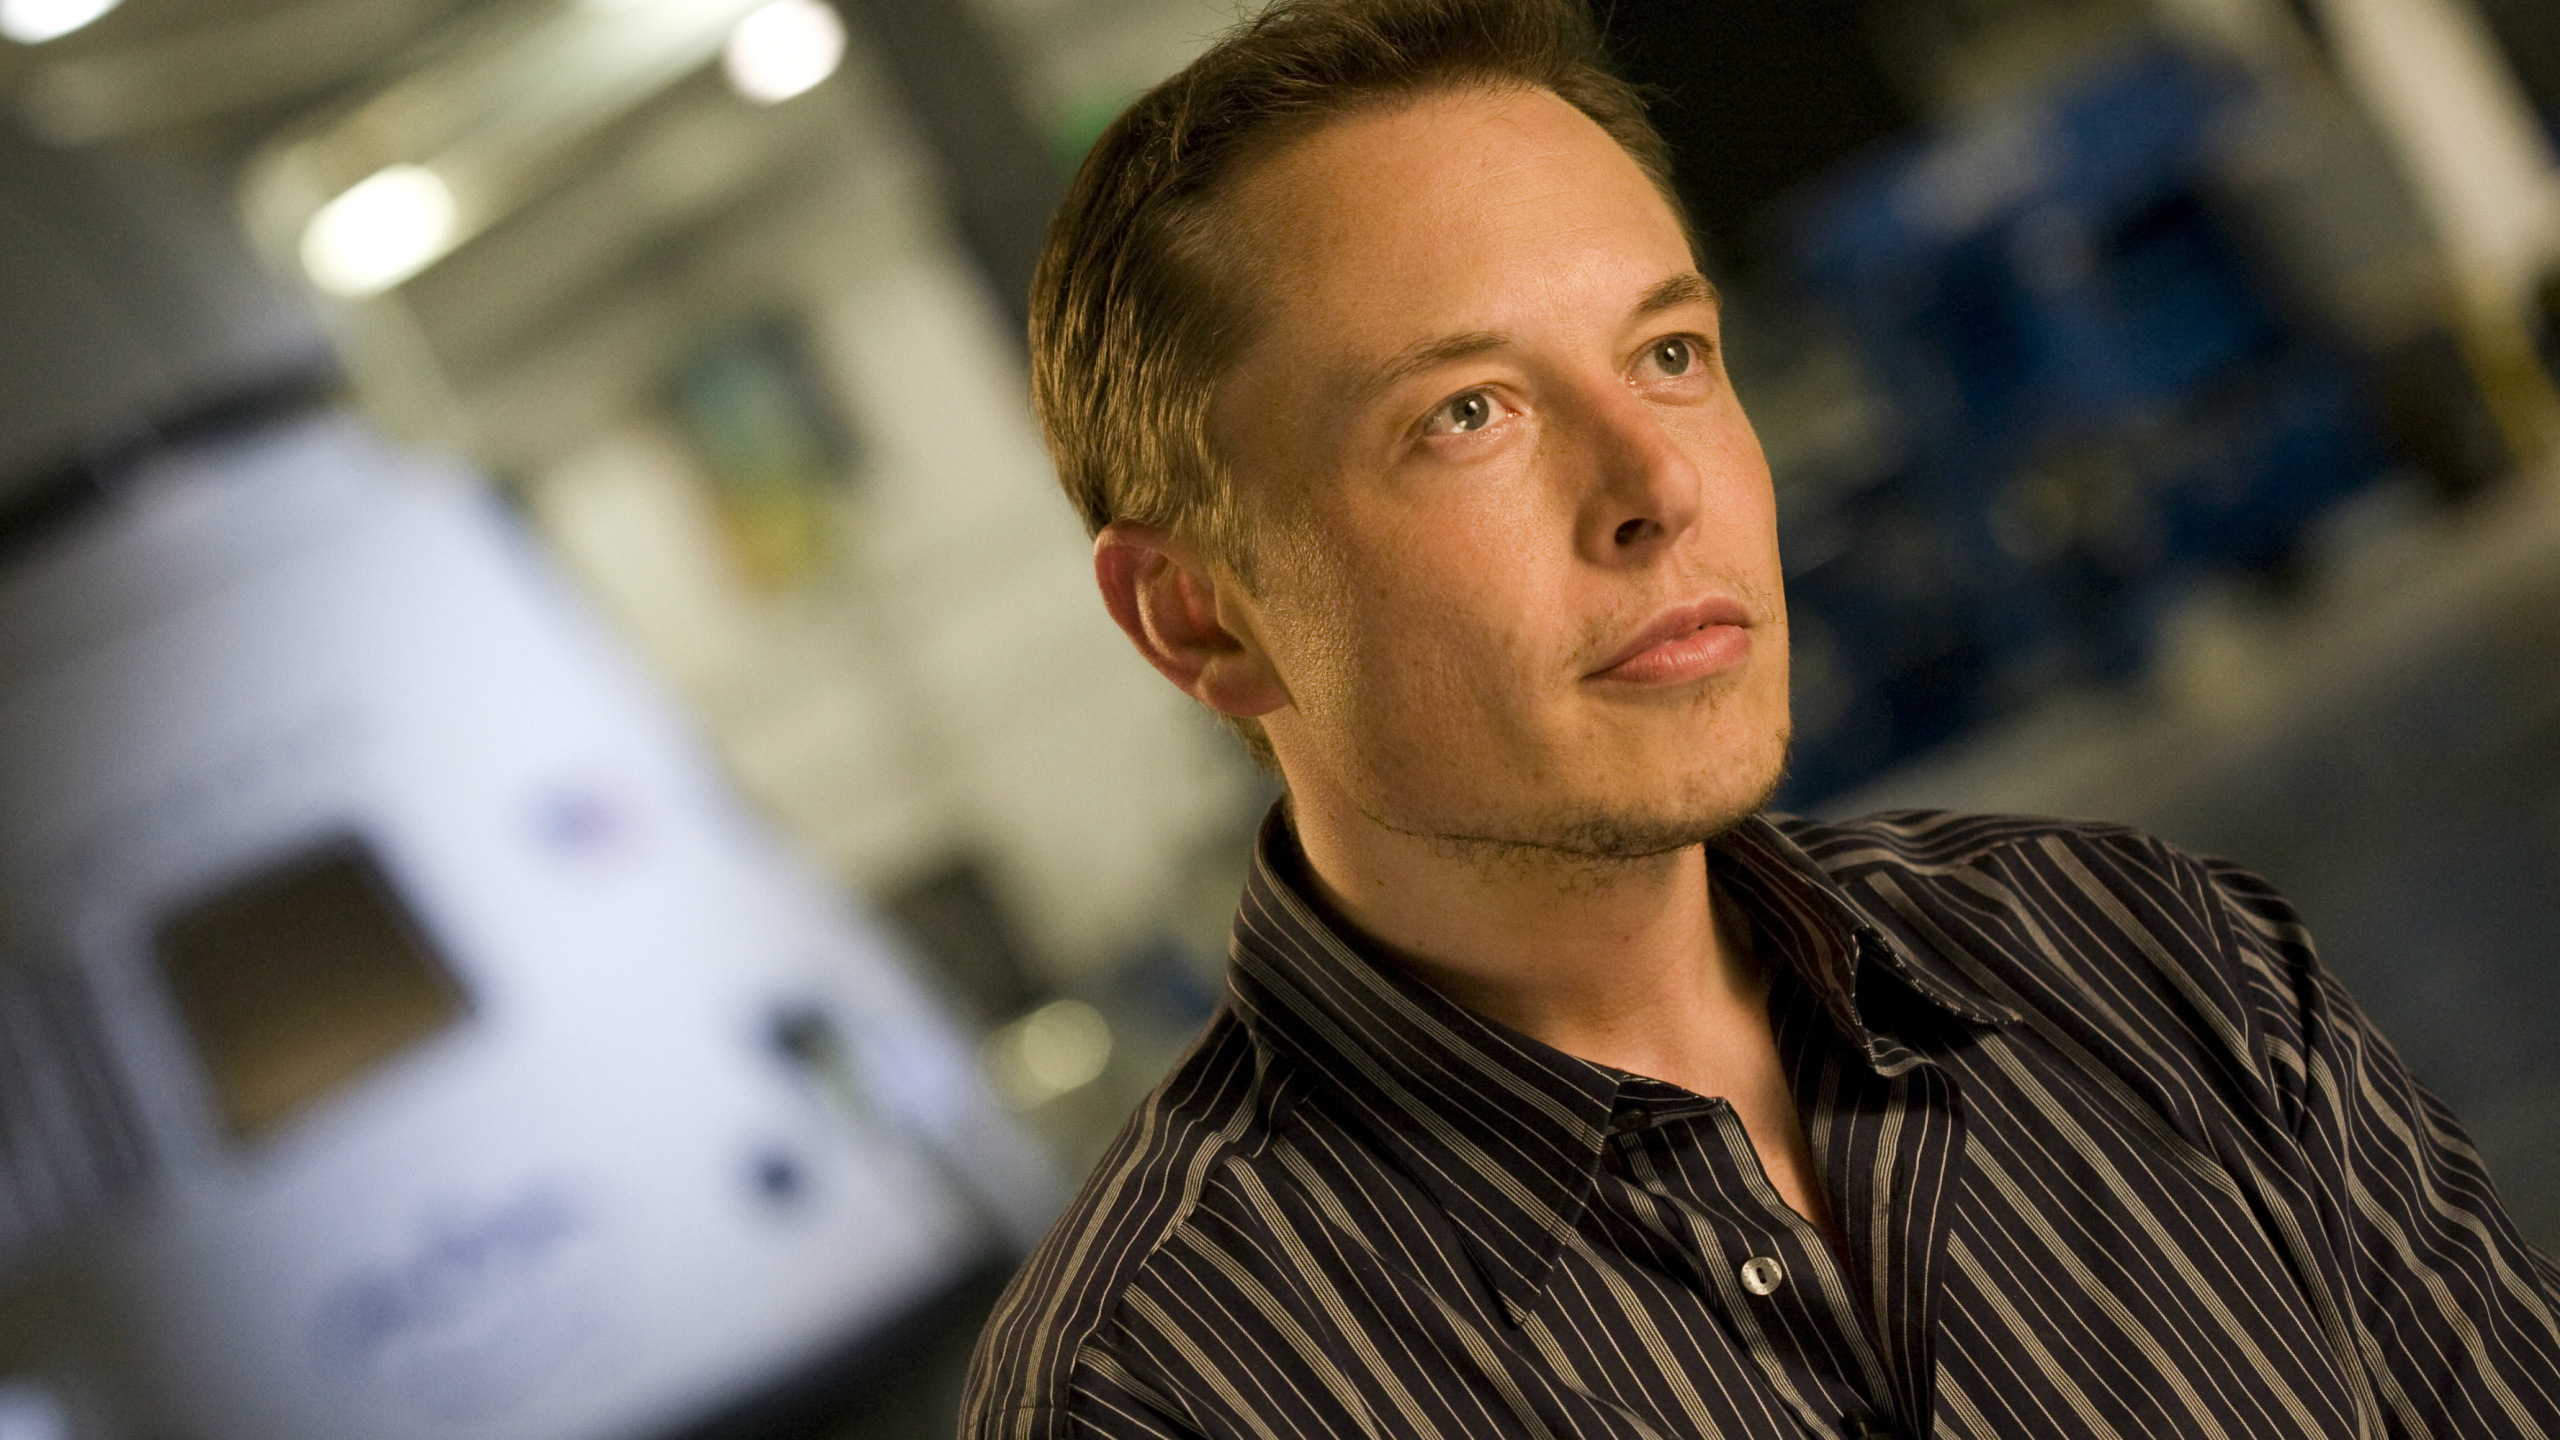 Elon Musk, SpaceX, Hyperloop, Trabajador de Cuello Blanco, el Vello Facial. Wallpaper in 2560x1440 Resolution